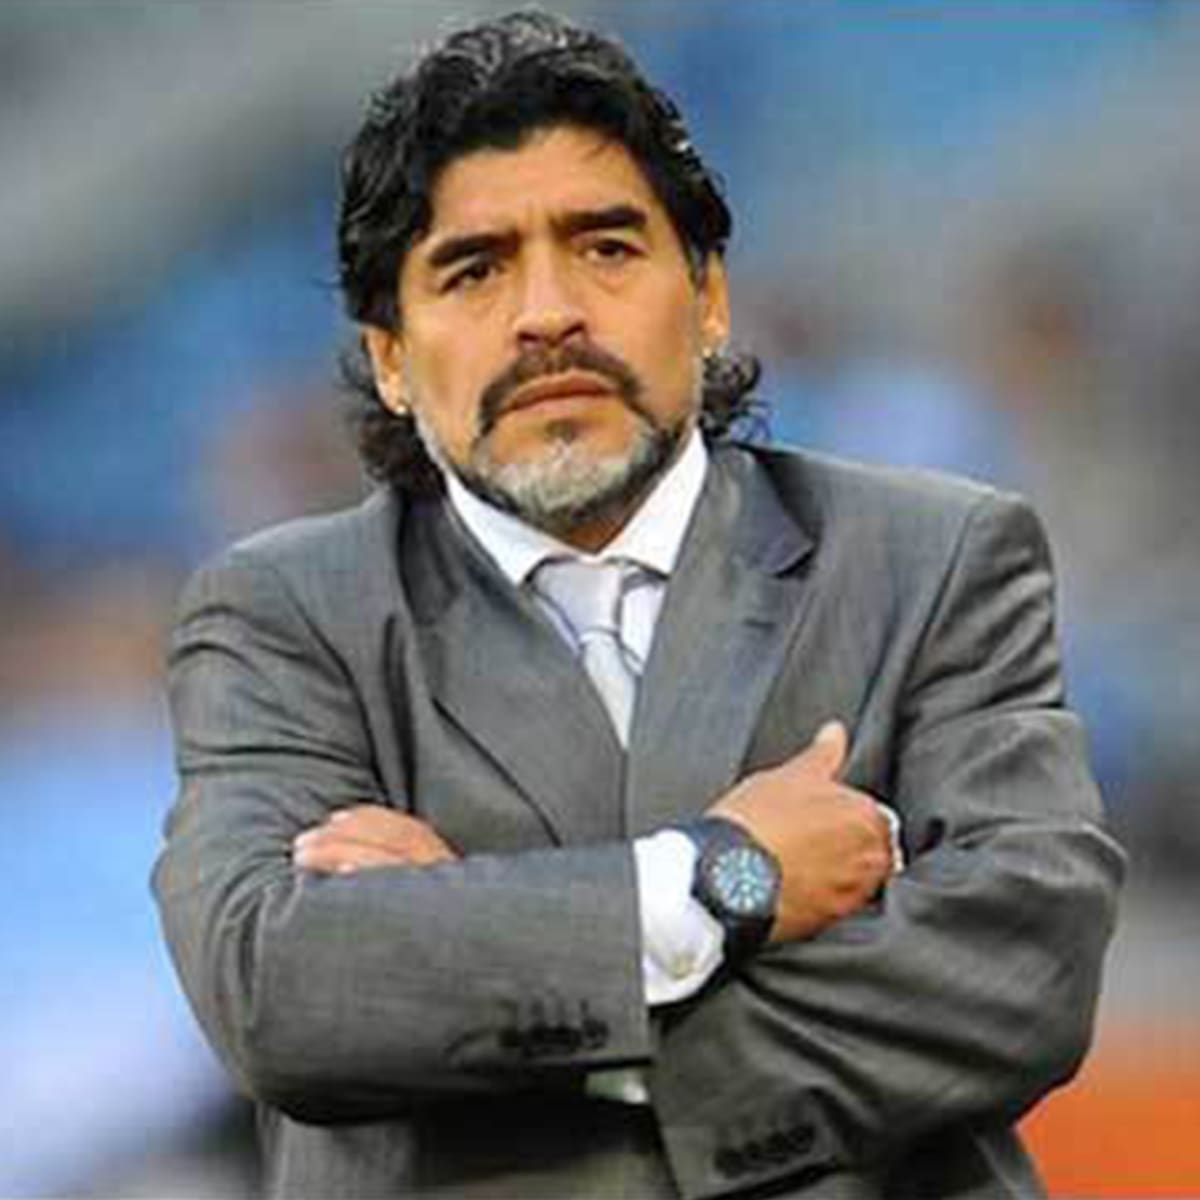 Od roku 1994 to Maradona zkouší s nevalnými úspěchy na trenérském poli